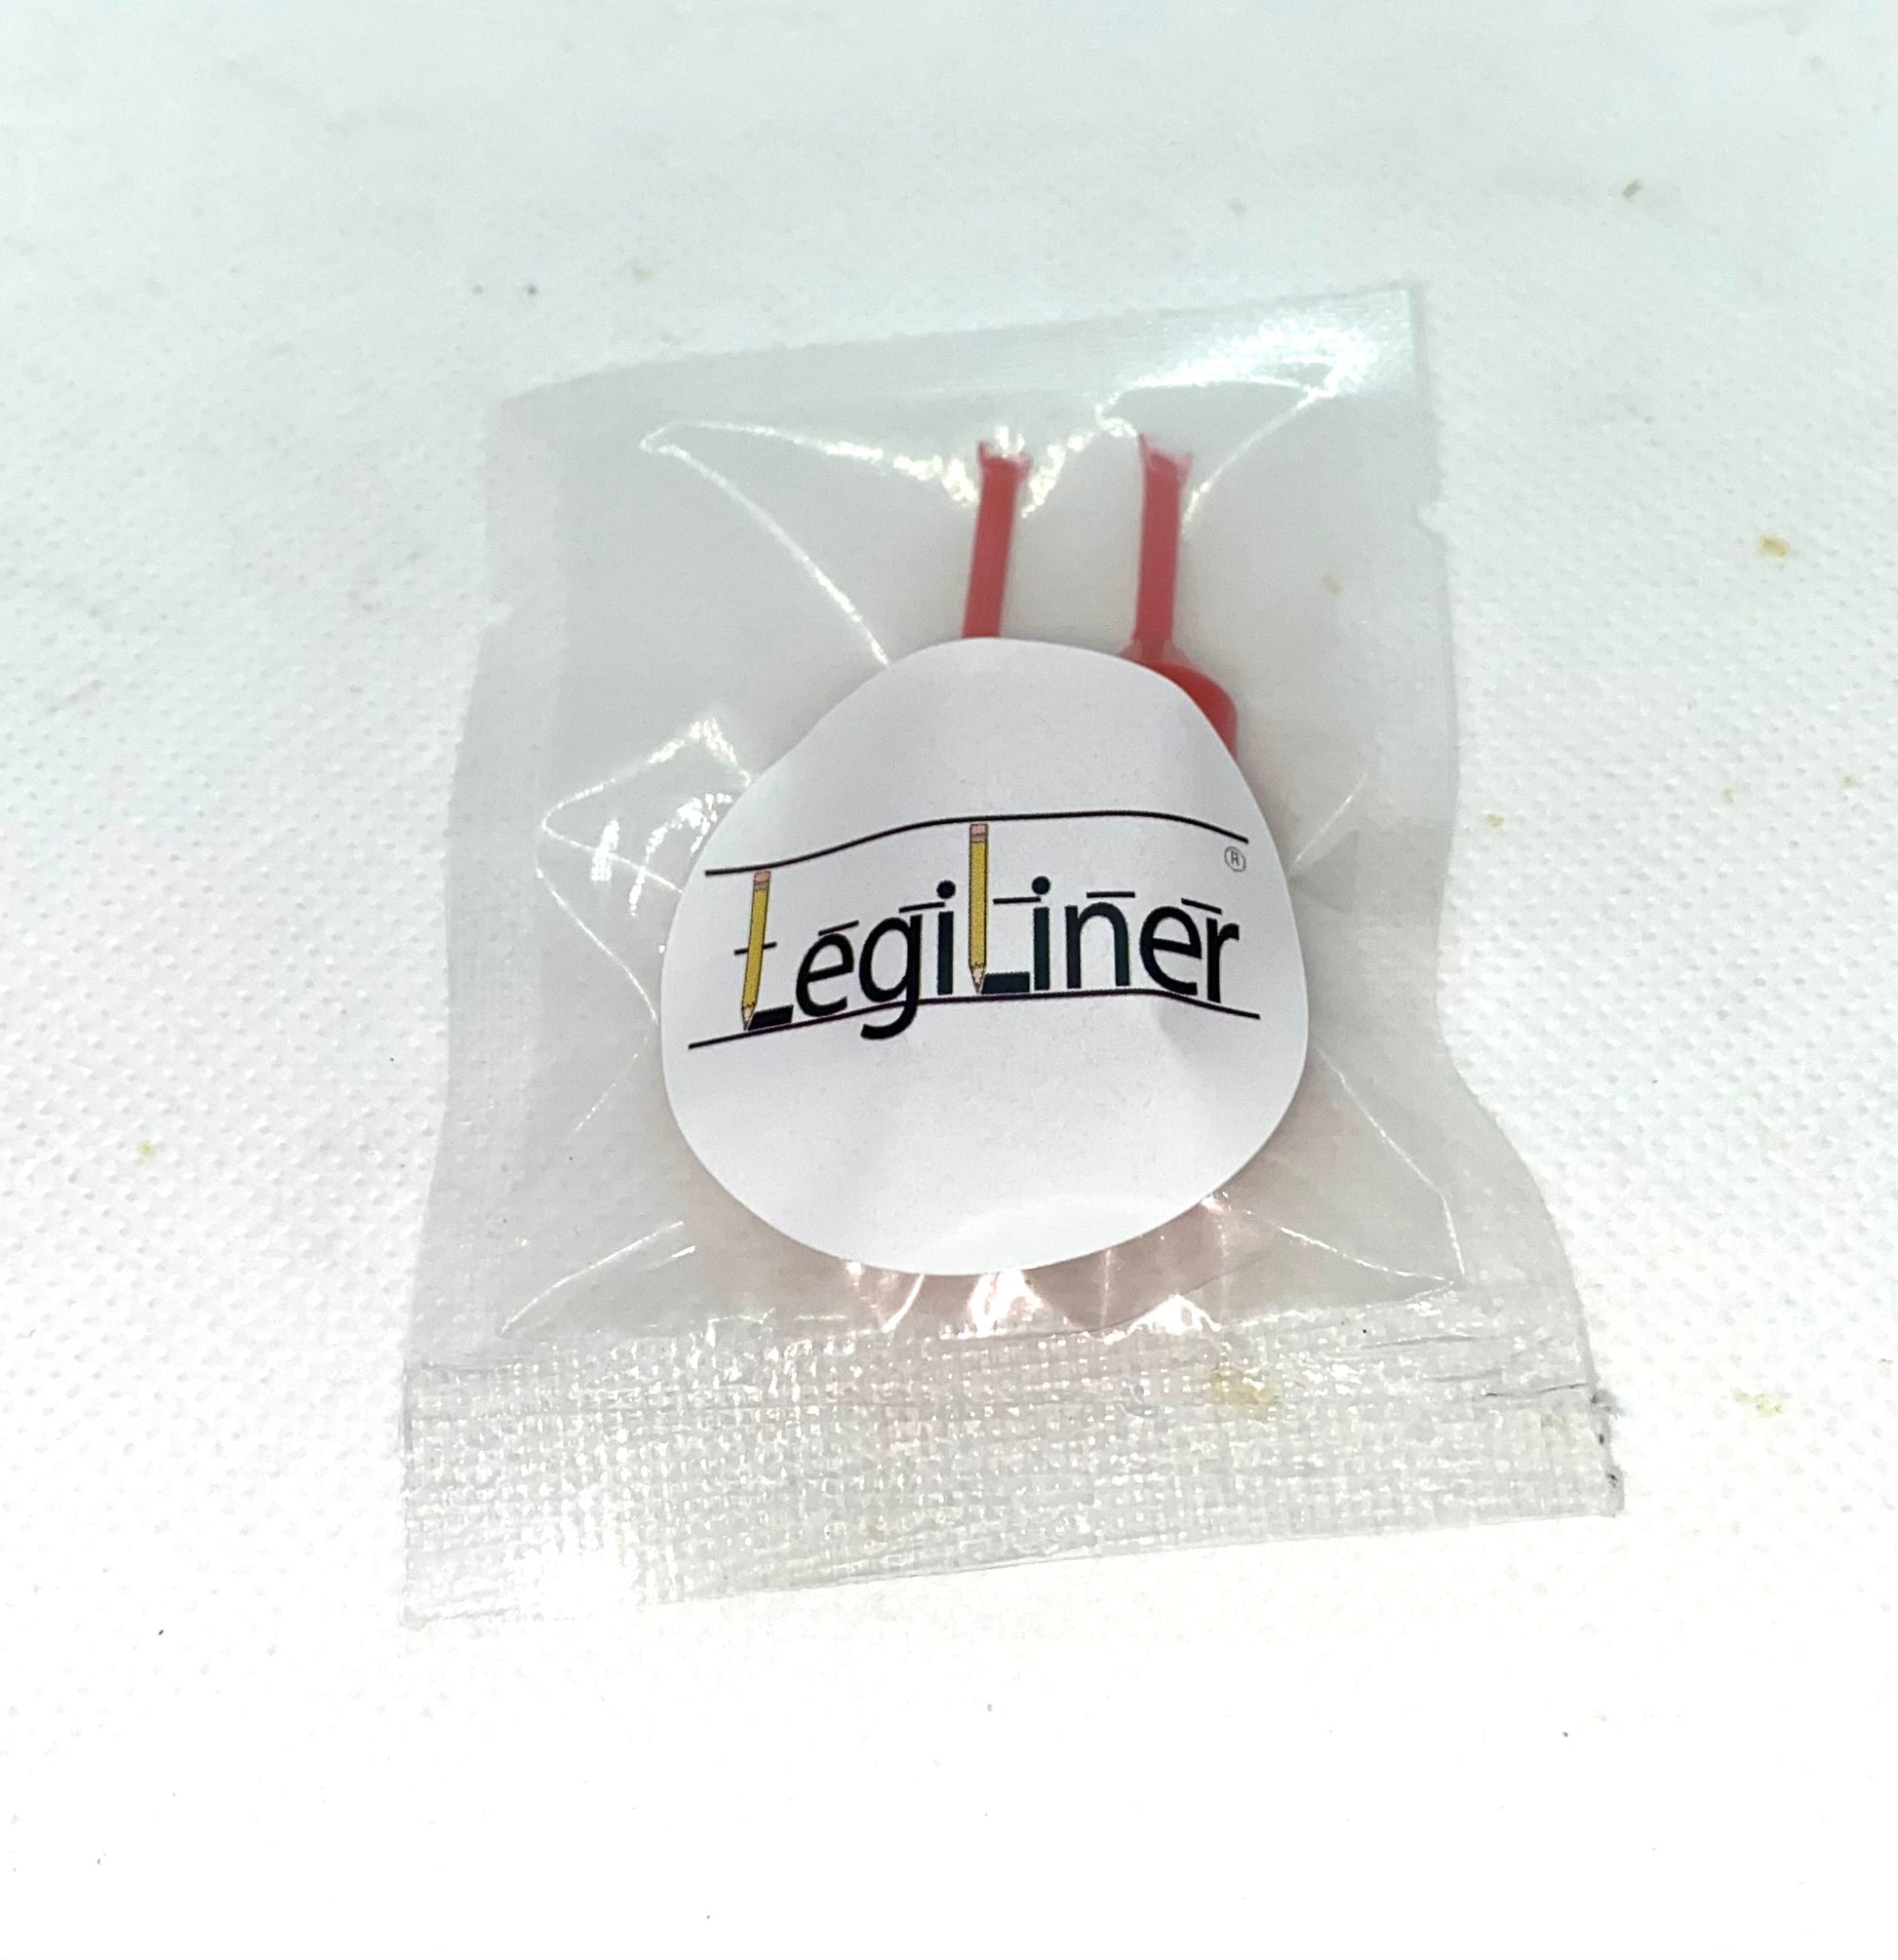 LegiLiner Roller Stamp Ink Refill Pods-Large (2.0 ml)-Pack of 3